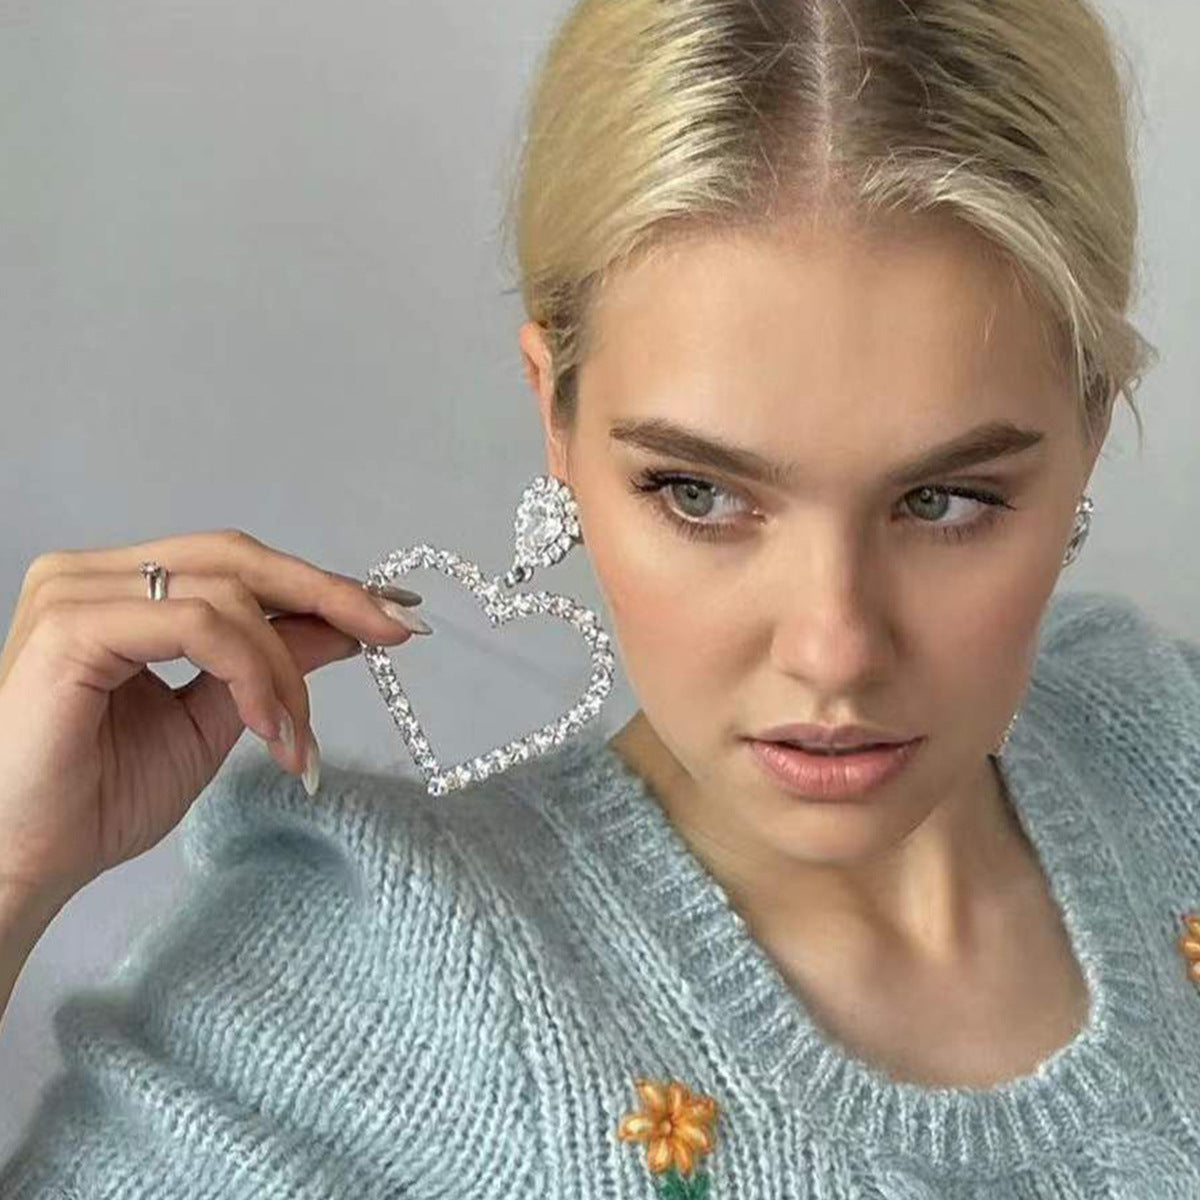 Alloy Diamond Rhinestone Glass Drill Heart-shaped Eardrops Earrings For Women